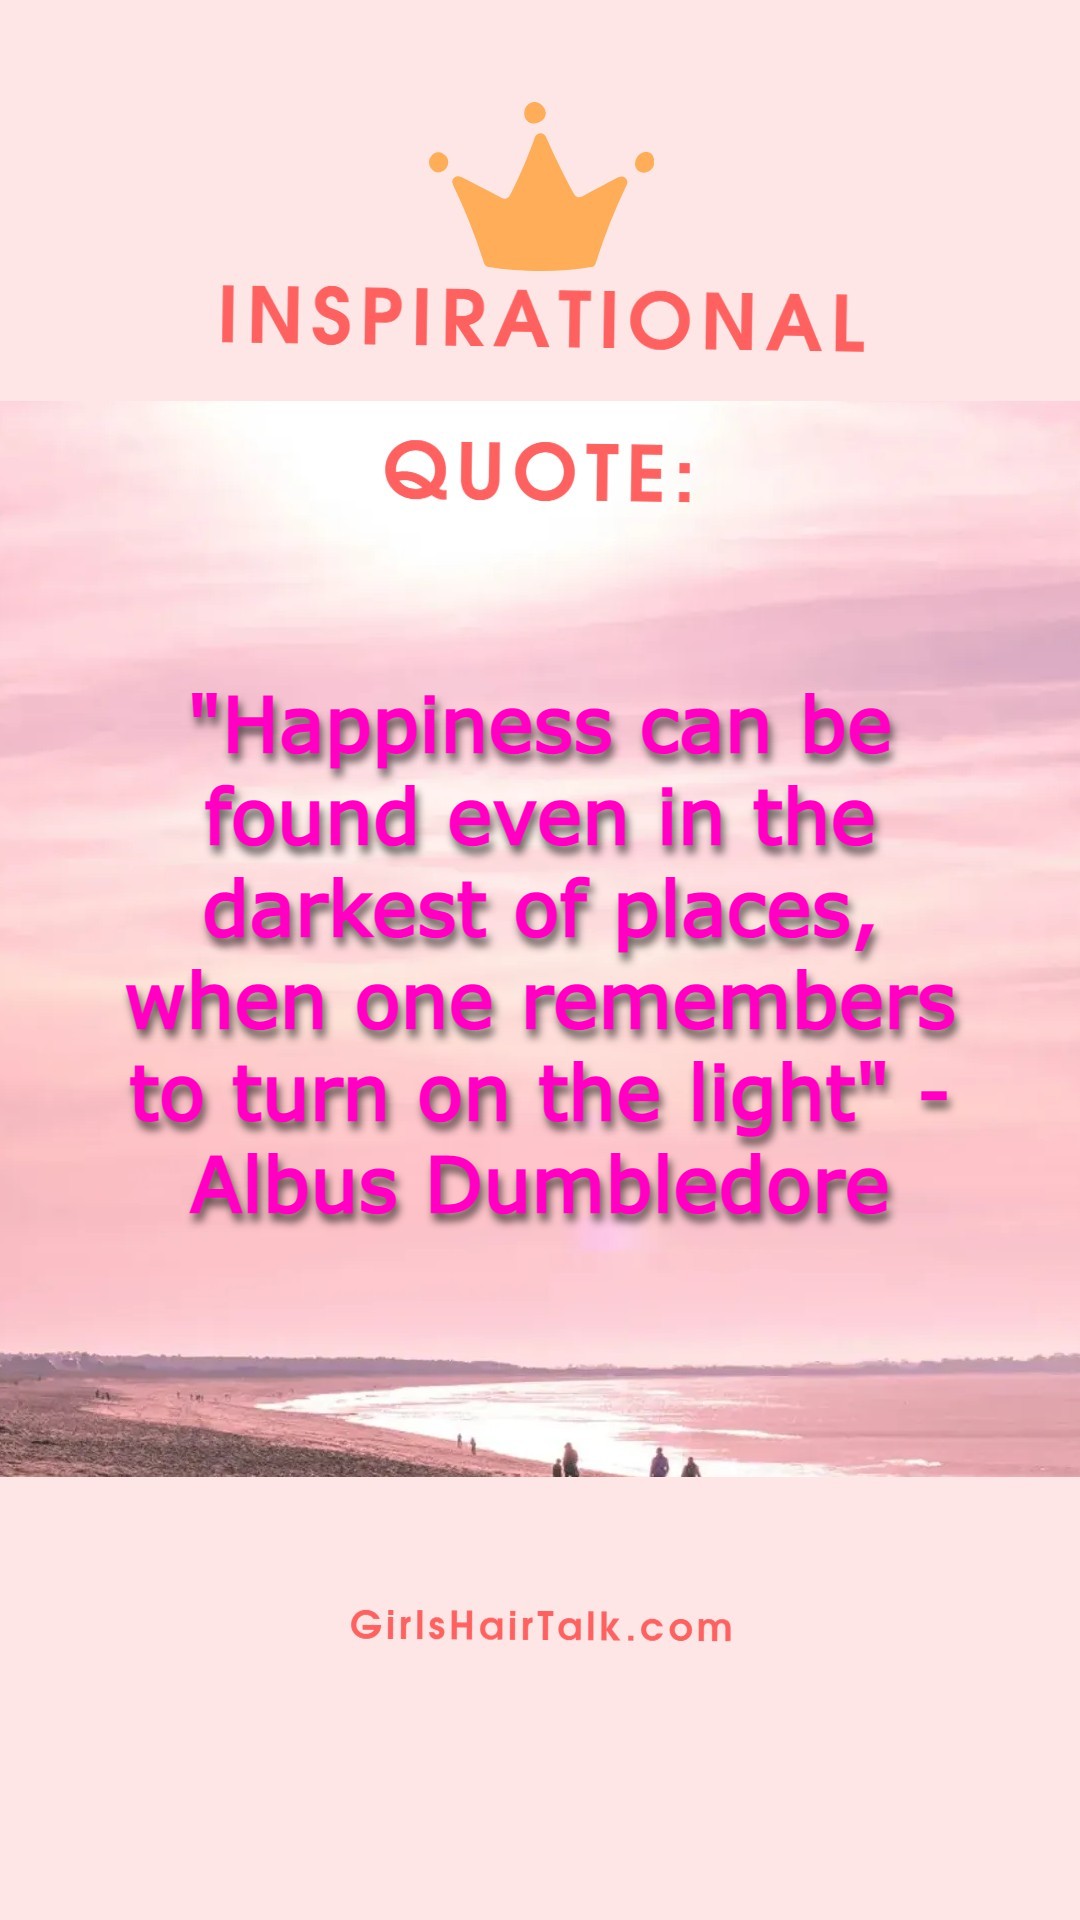 Albus Dumbledore cancer quote